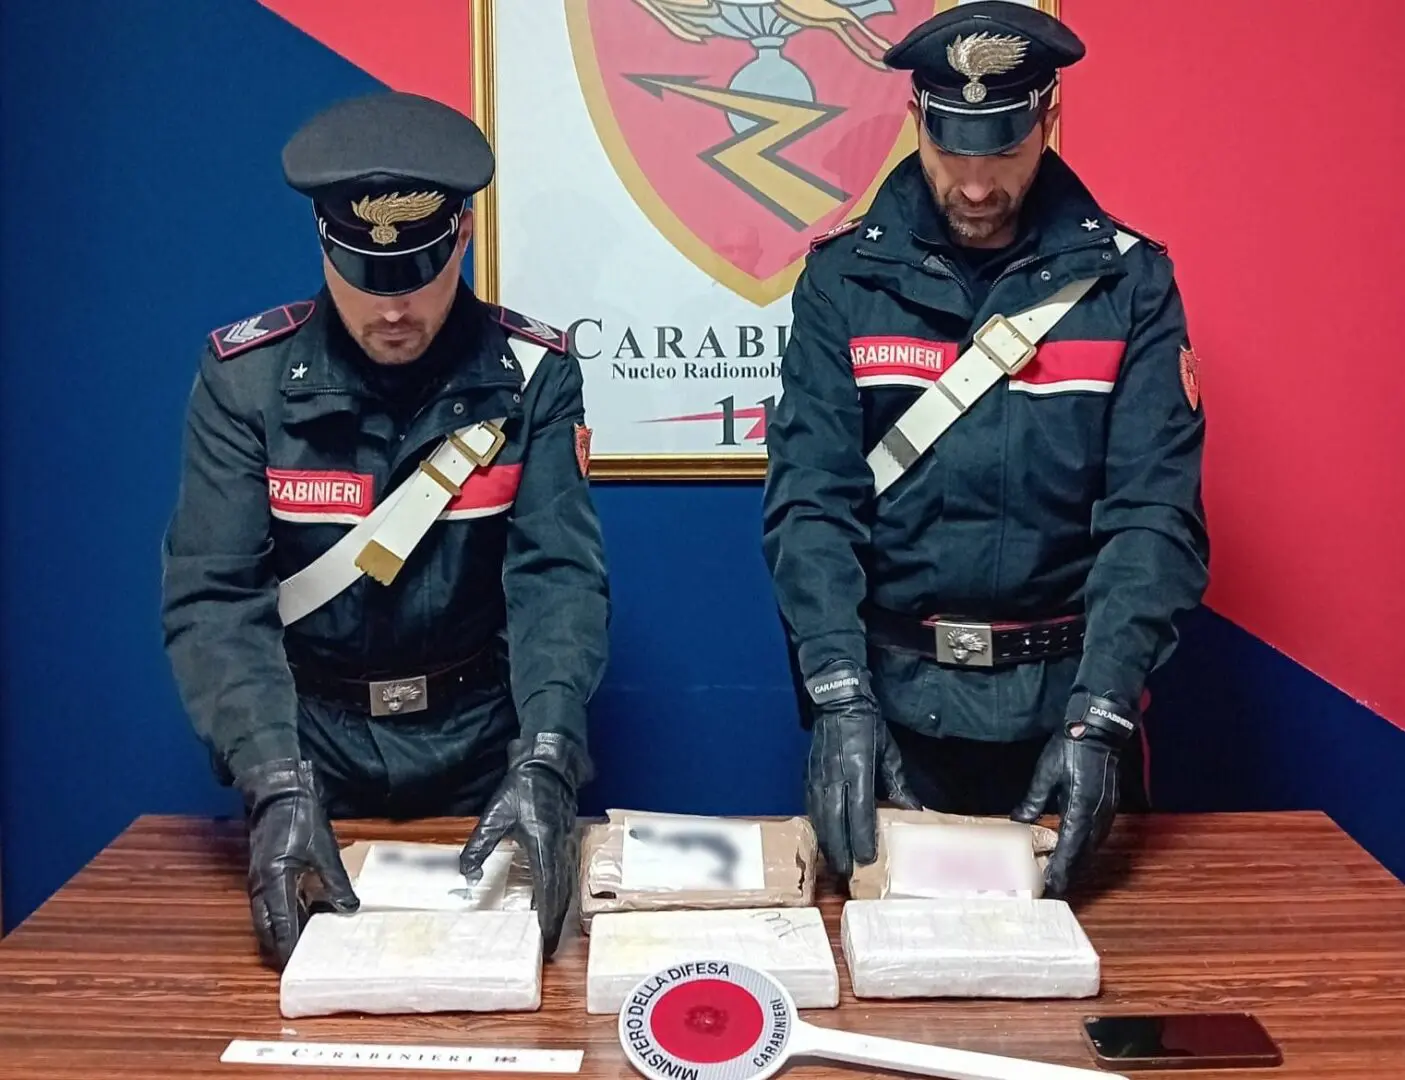 Sbarca a Messina con oltre 3 chili di cocaina, arrestata